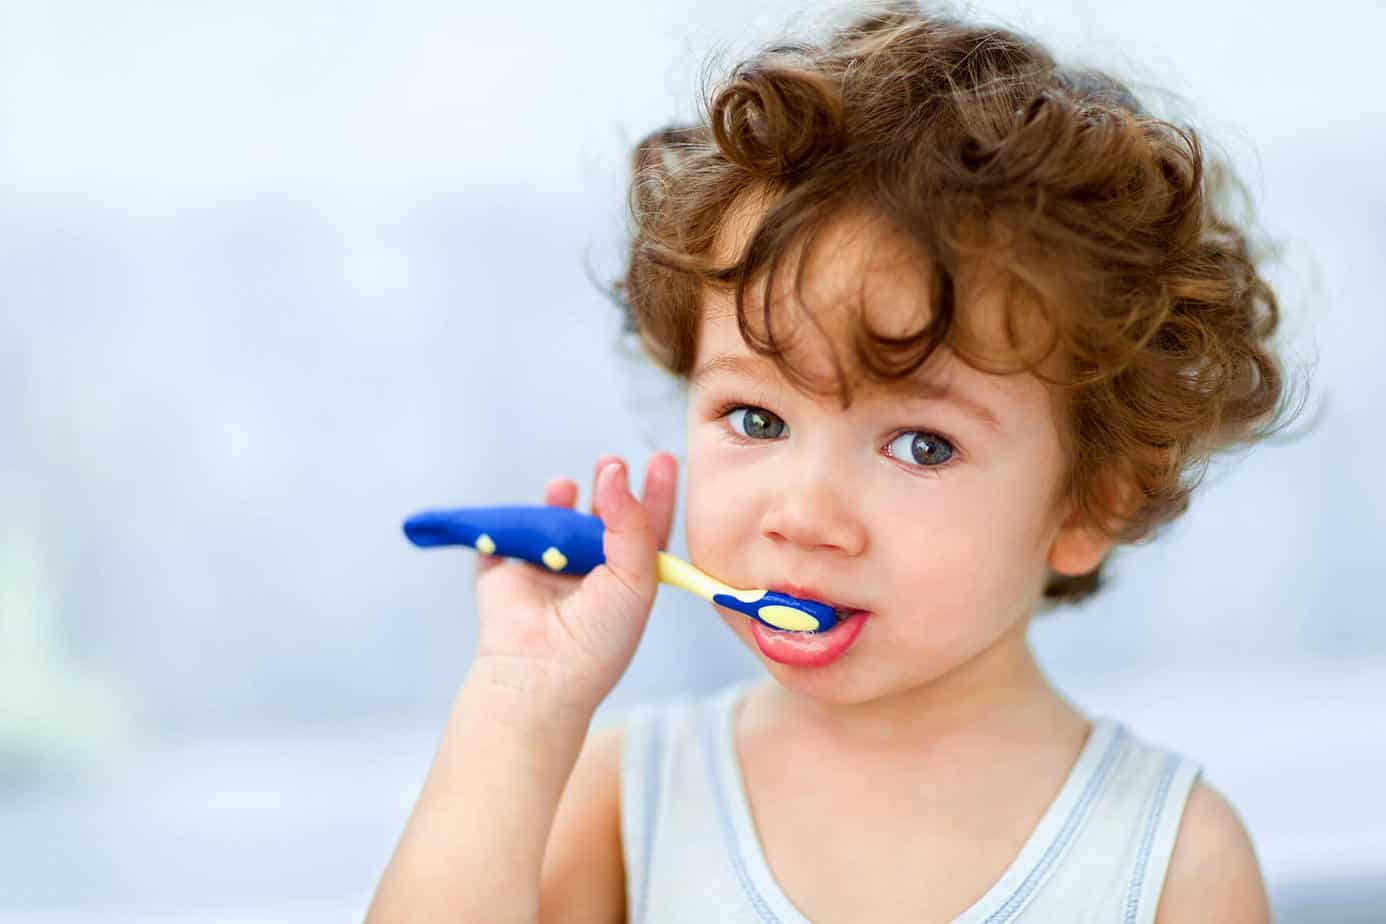 דירוג מברשות השיניים הטובות ביותר לילדים לשנת 2020